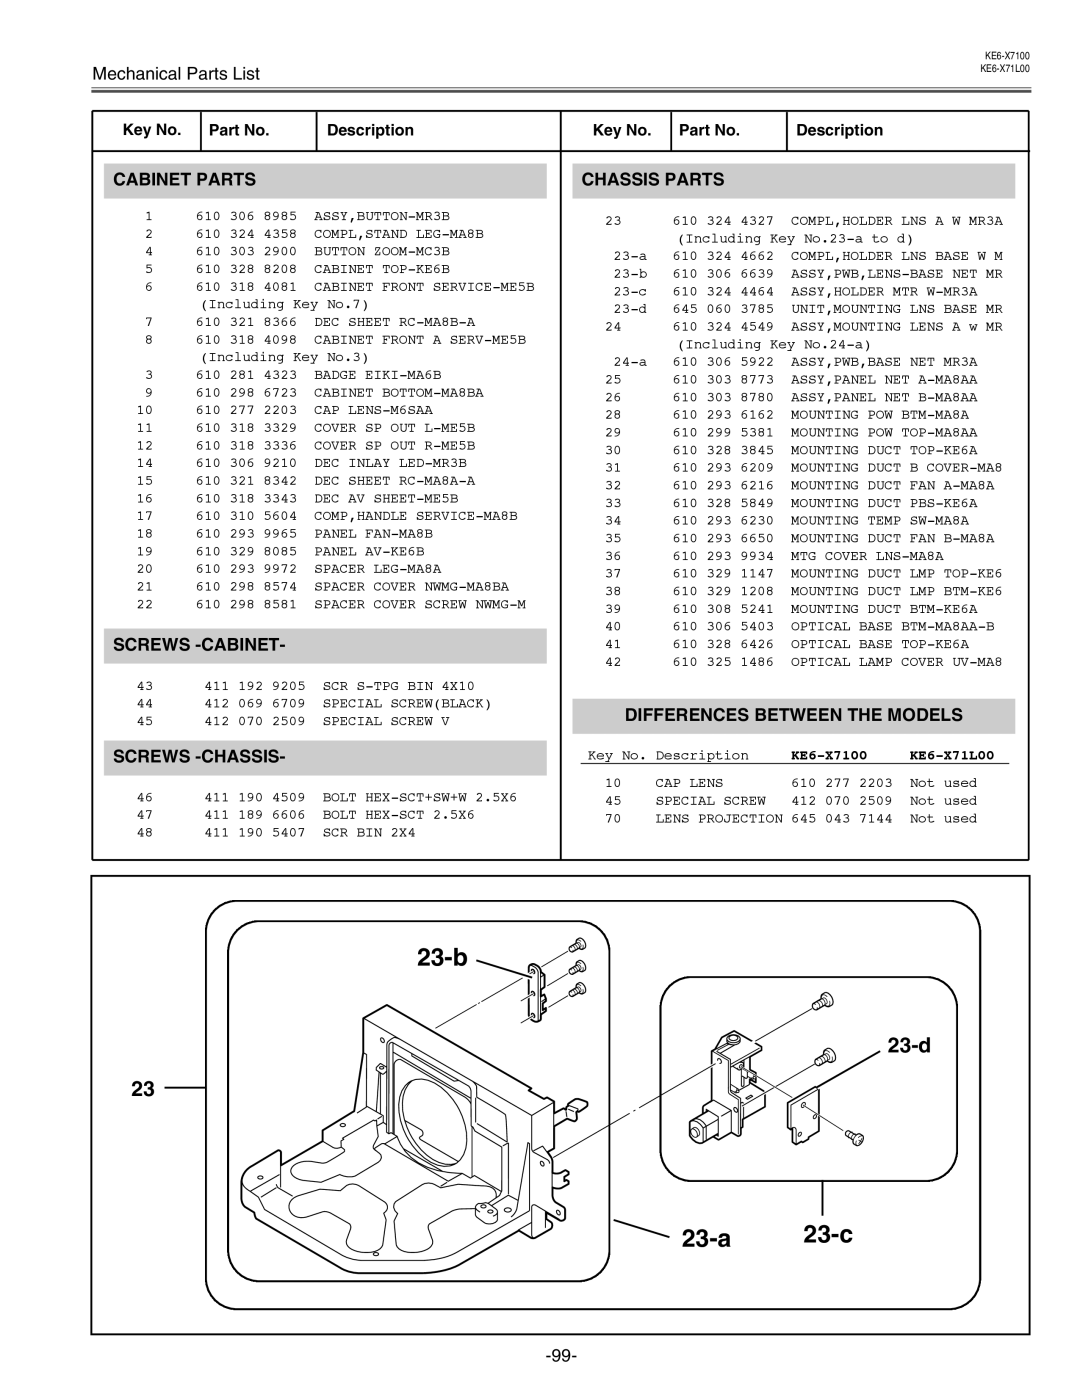 Eiki LC-X71 LC-X71L service manual 23-b, 23-a, 23-c, KE6-X7100, KE6-X71L00 